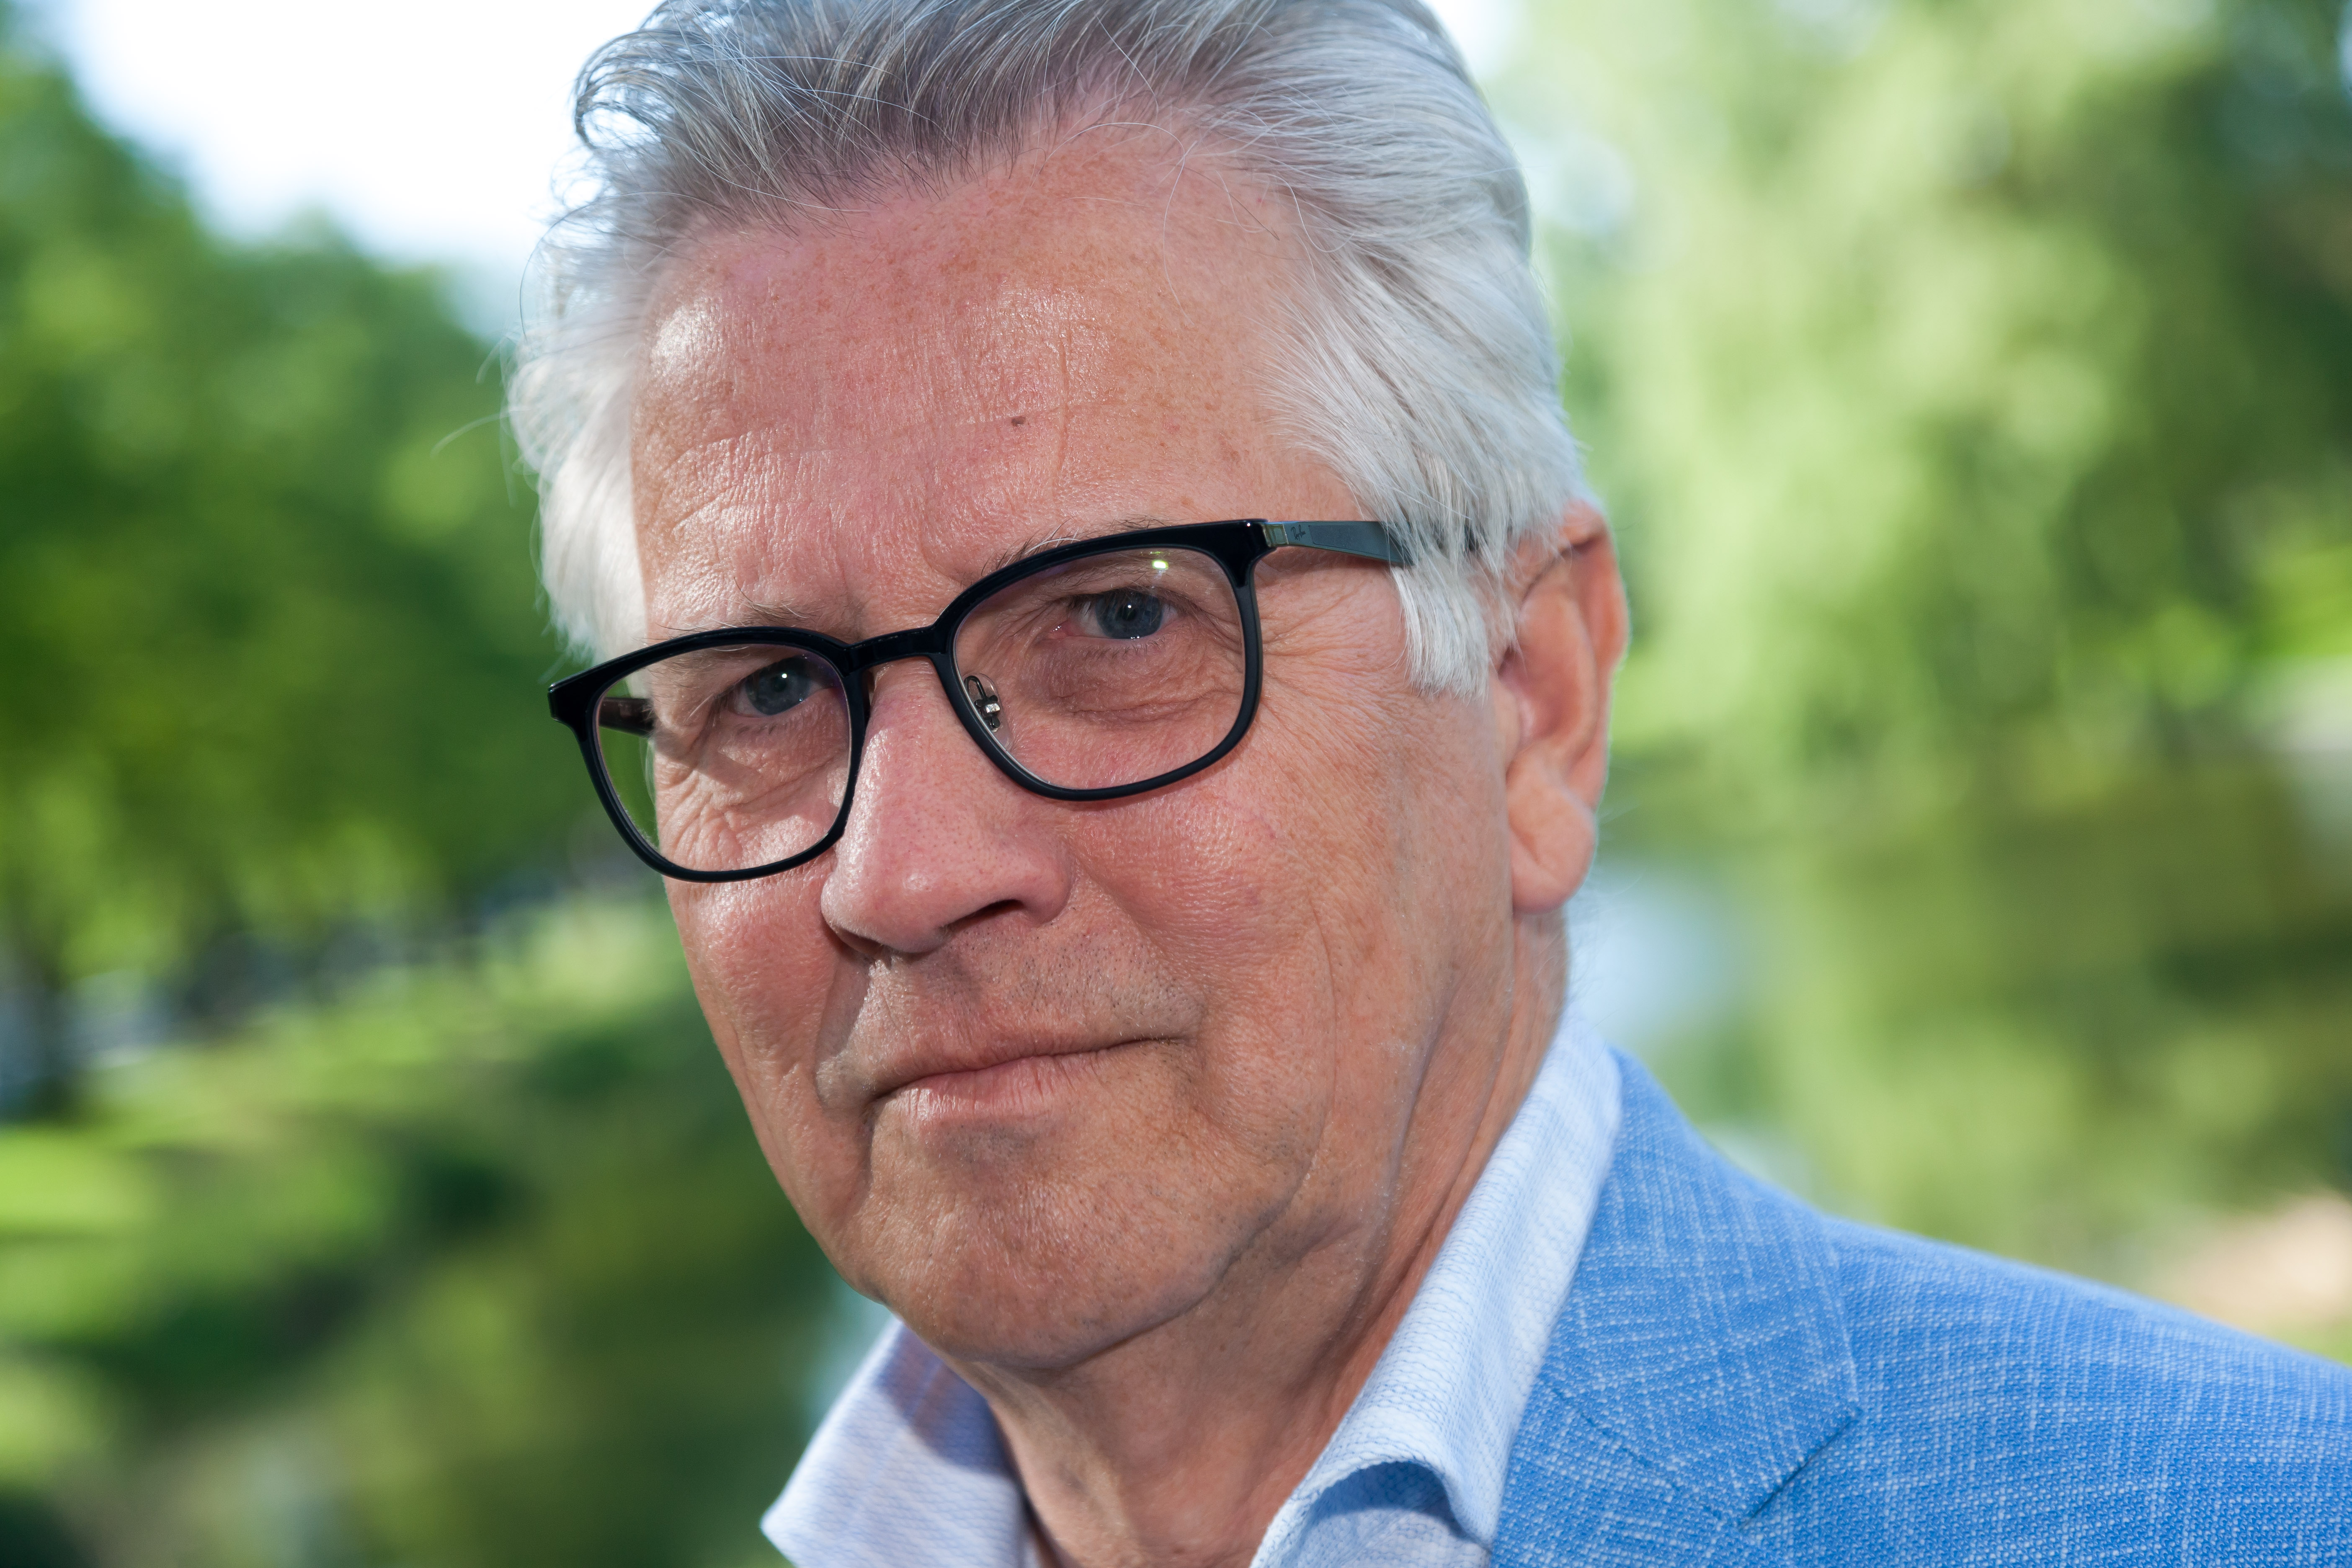 Directeur-bestuurder Sape Pranger van Zorggroep Drenthe met pensioen